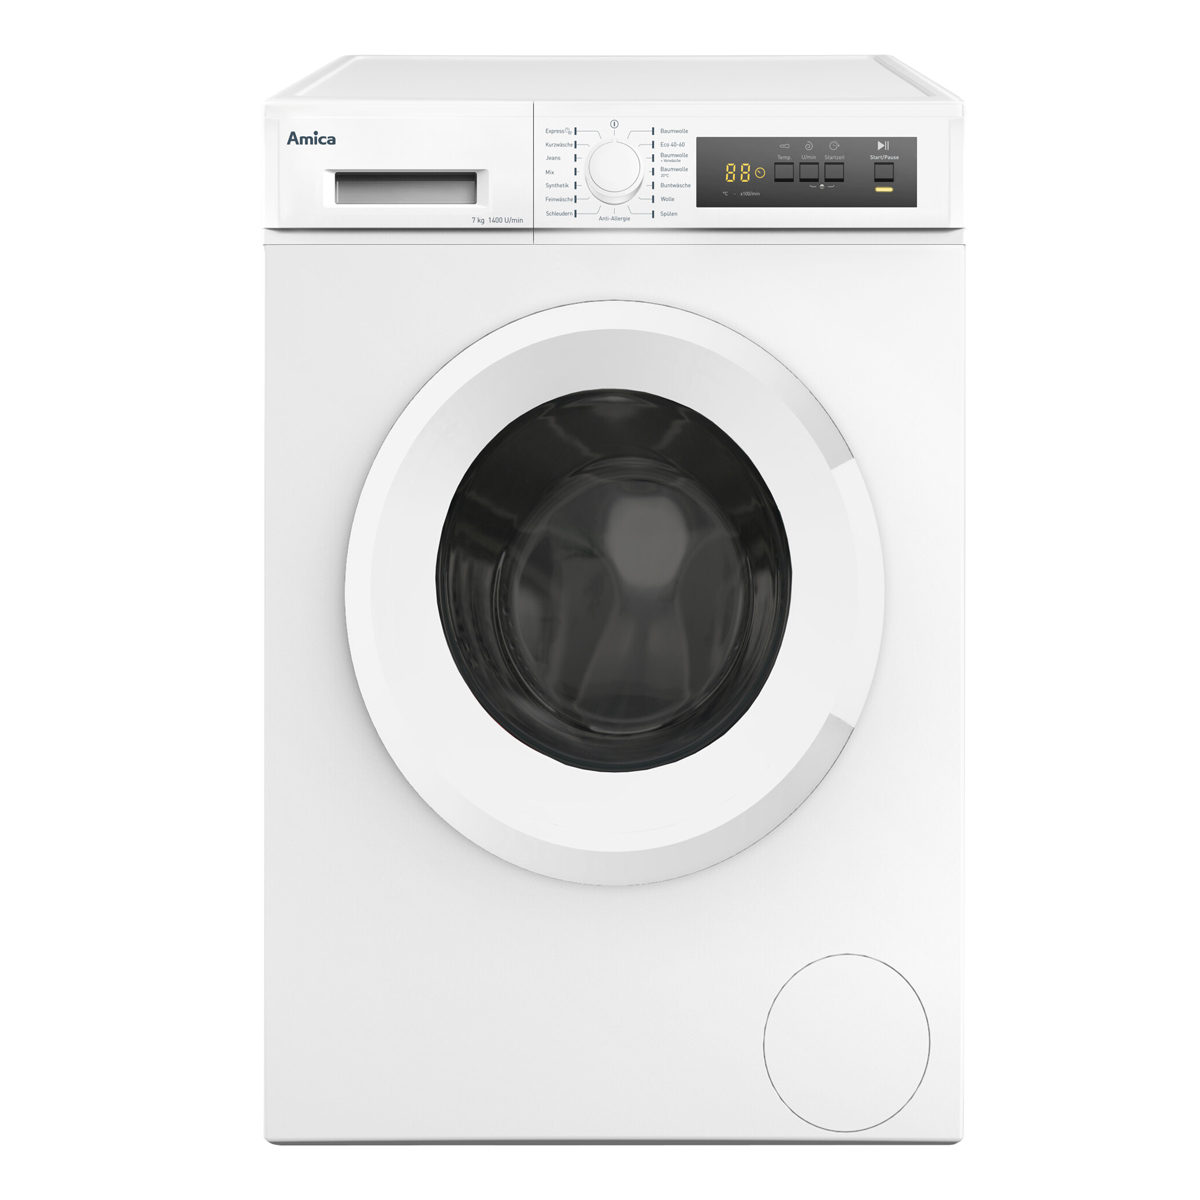 Weiß kg, Stopp Aqua 7kg Waschmaschine Startzeitvorwahl Frontlader (7 U/Min Waschmaschine AMICA 1400 D)